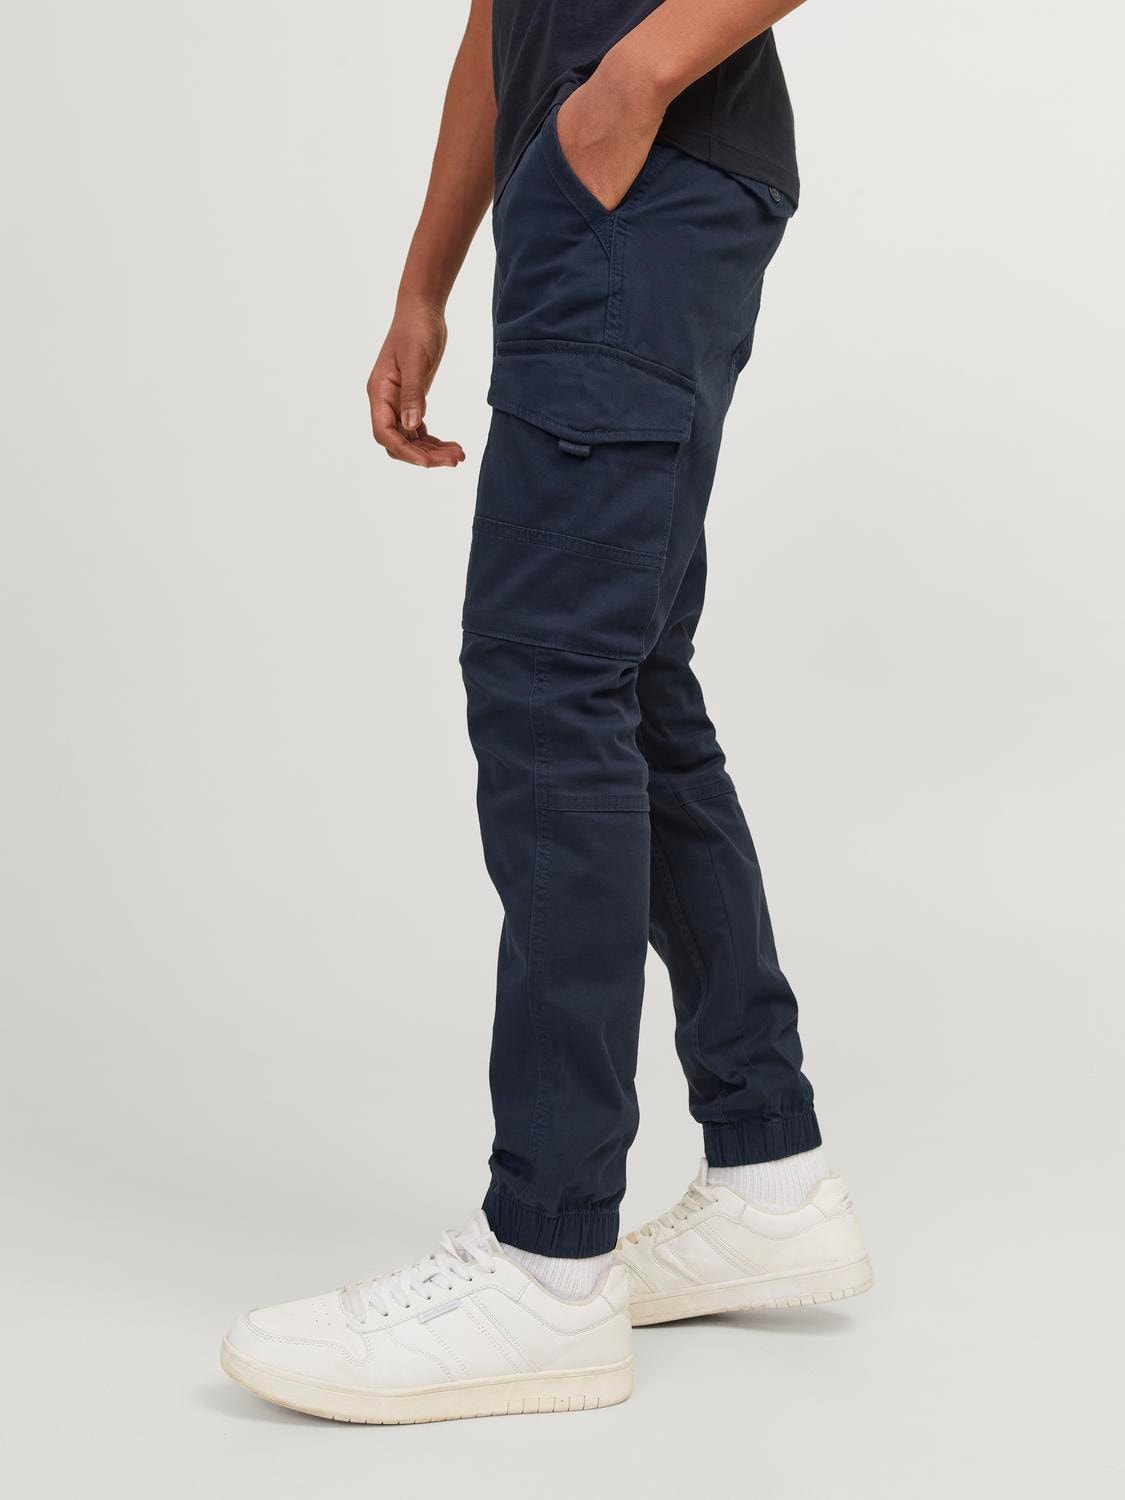 Jack & Jones Cargo kalhoty Junior -Navy Blazer - 12177424